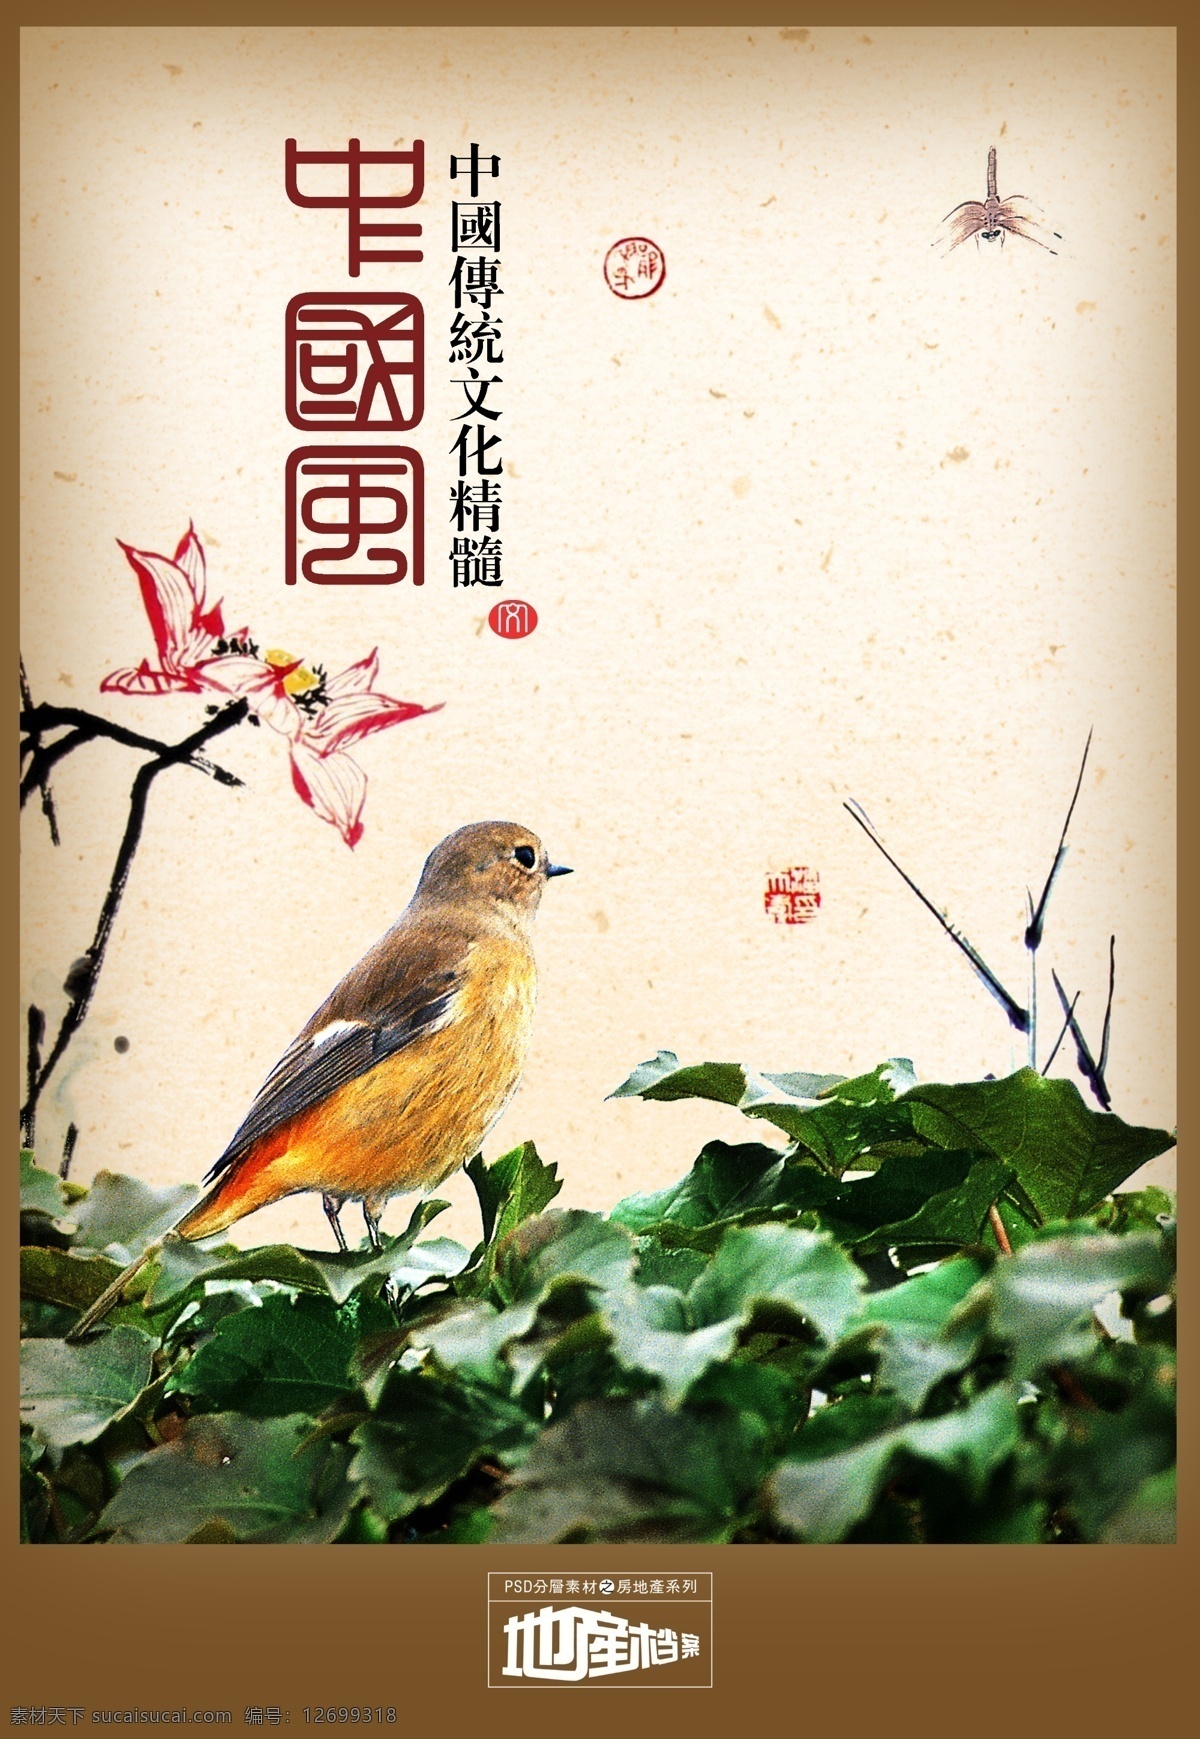 地产 档案 地产档案 房地产 源文件 绿叶 小鸟 植物 中国风